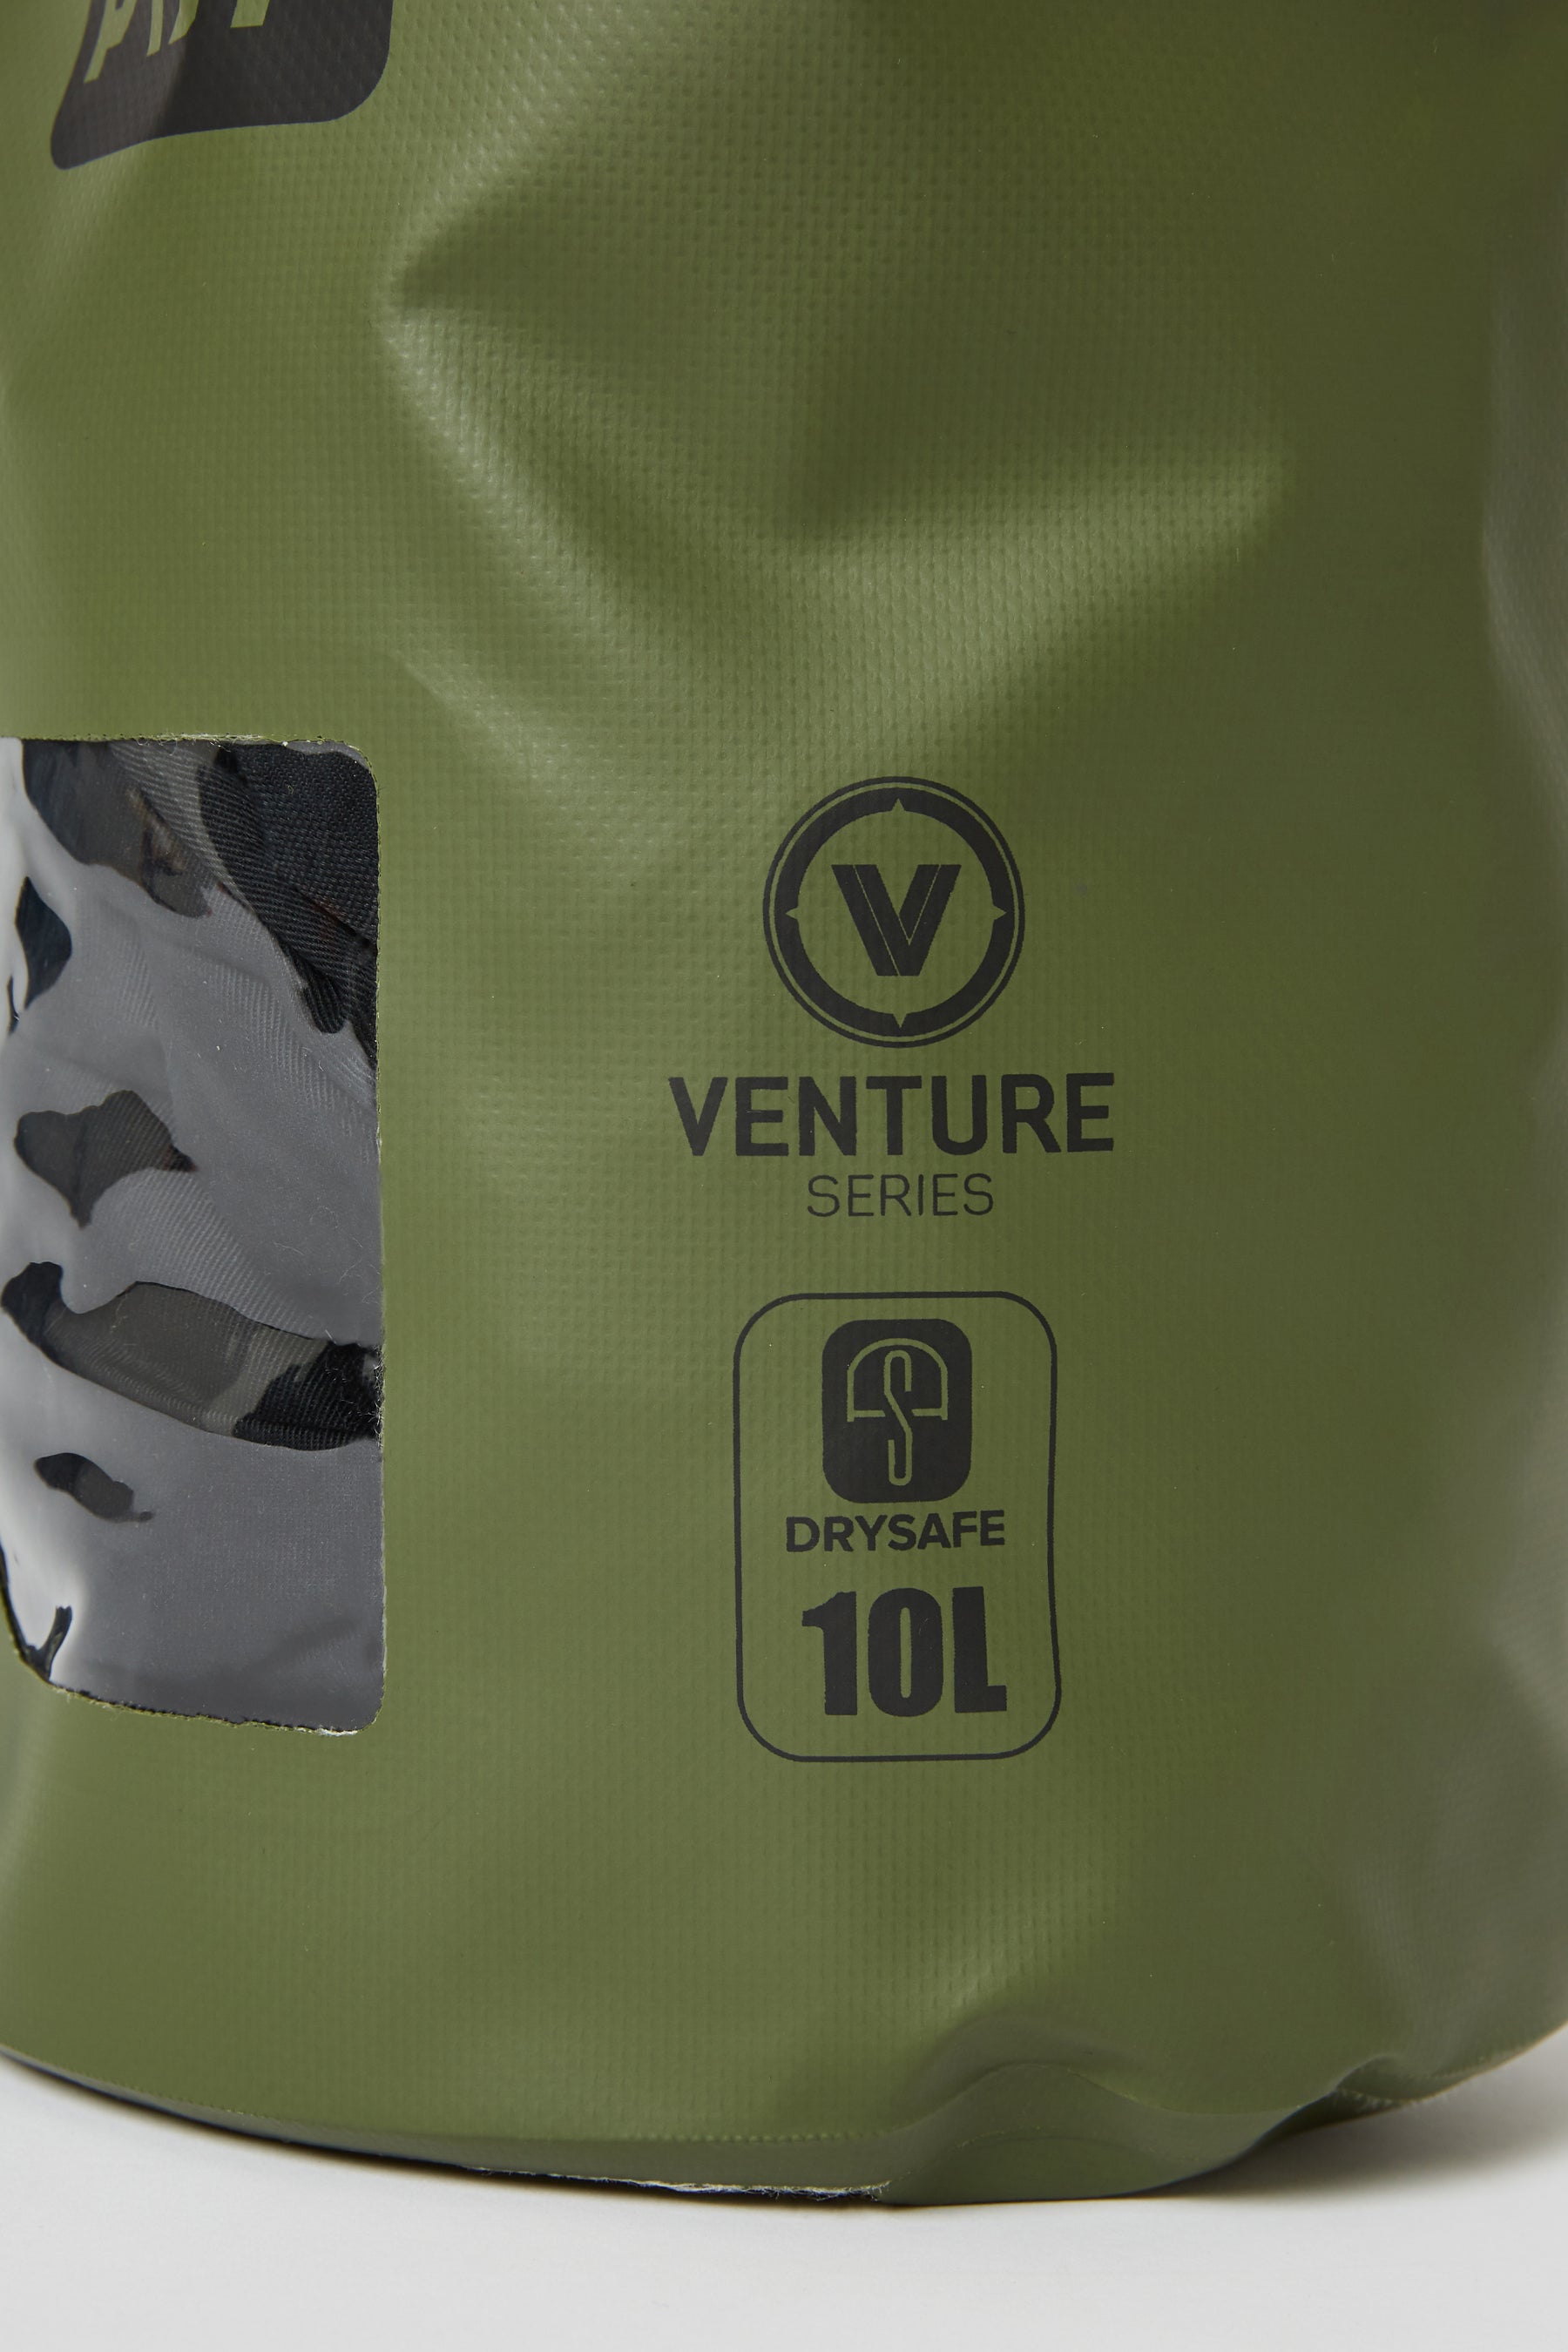 Jetpilot Venture 10l Drysafe Backpack - Sage Lifestyle 2